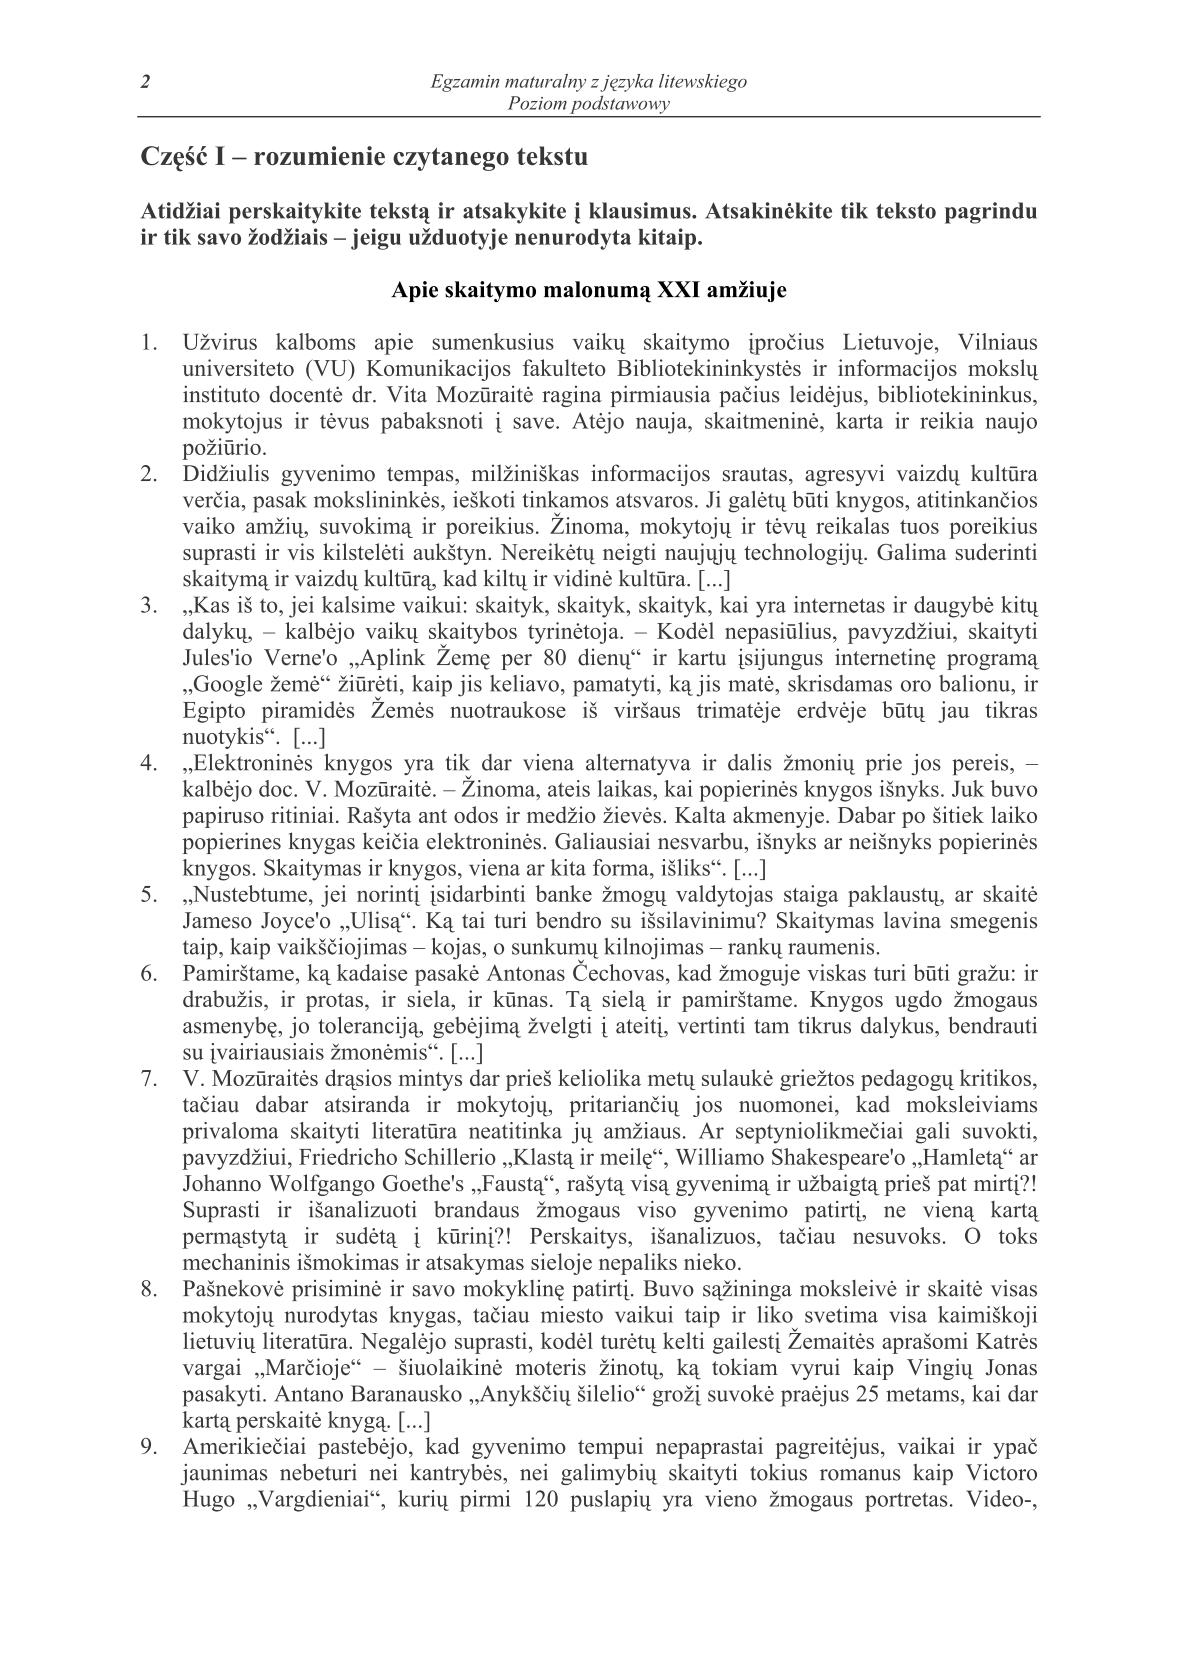 pytania-jezyk-litewski-poziom-podstawowy-matura-2014-str.2